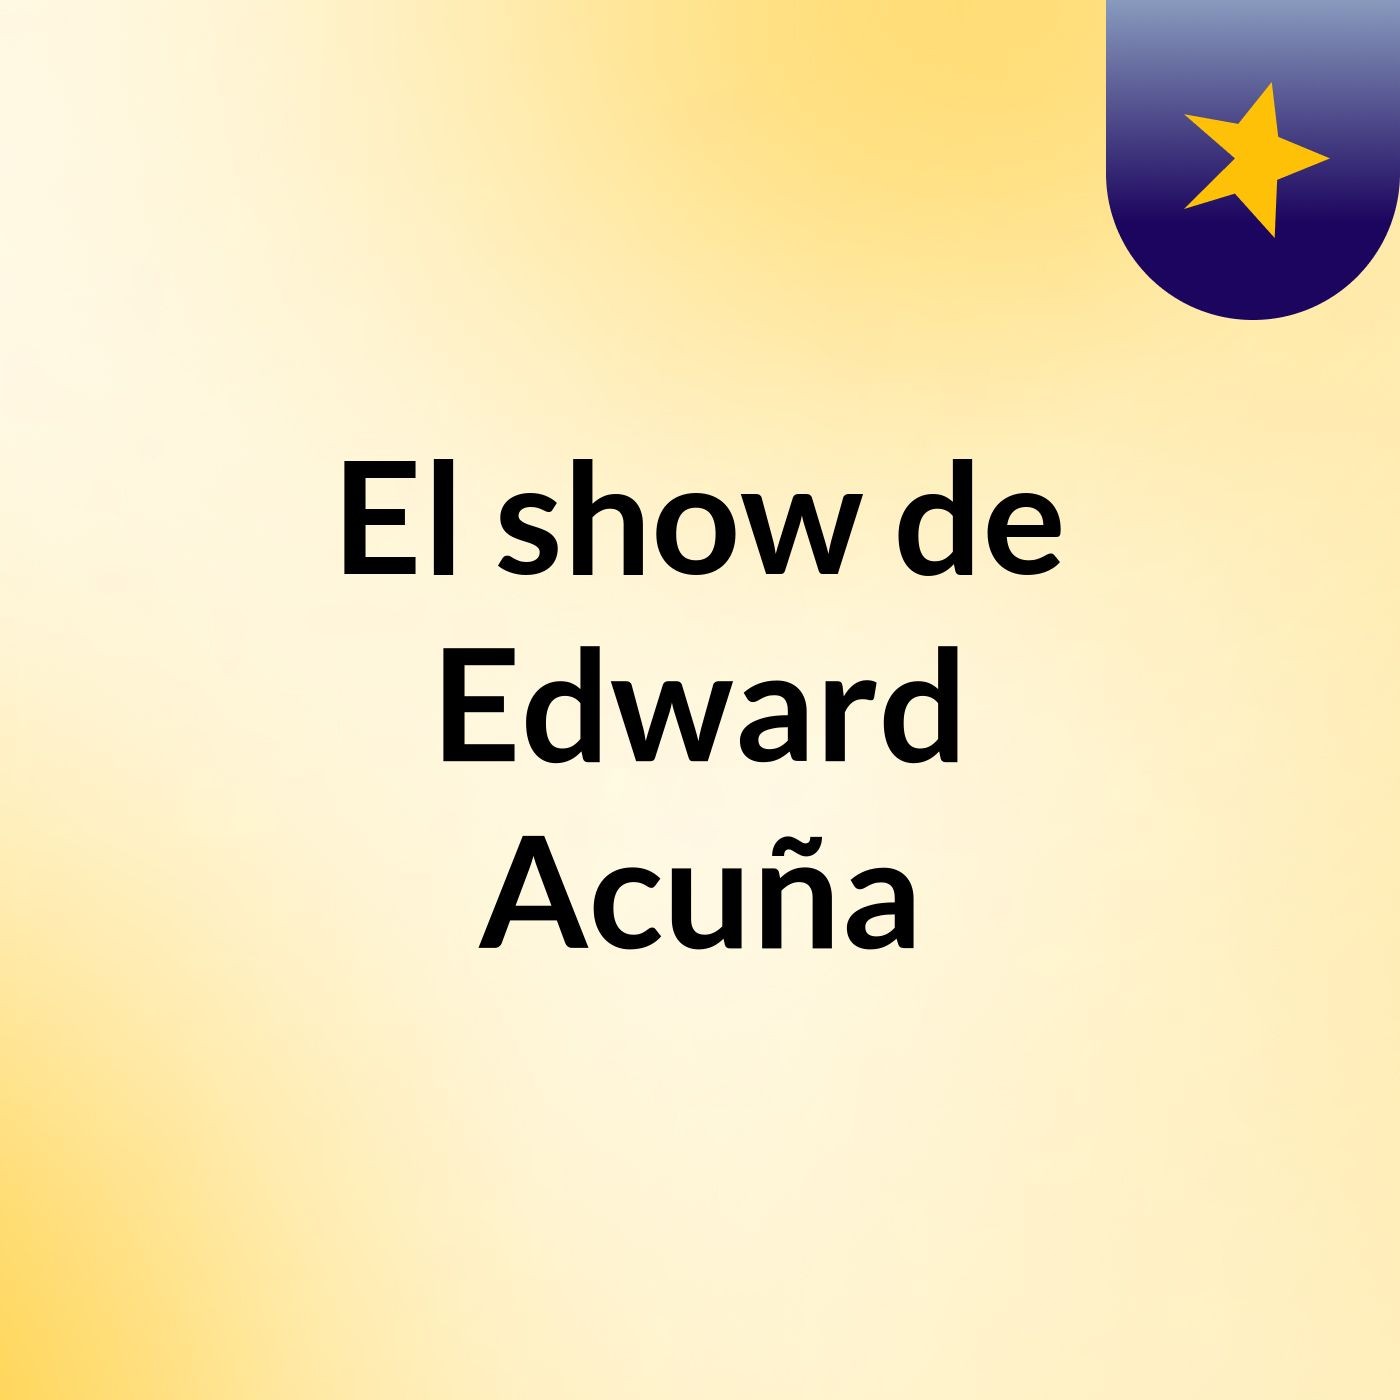 El show de Edward Acuña